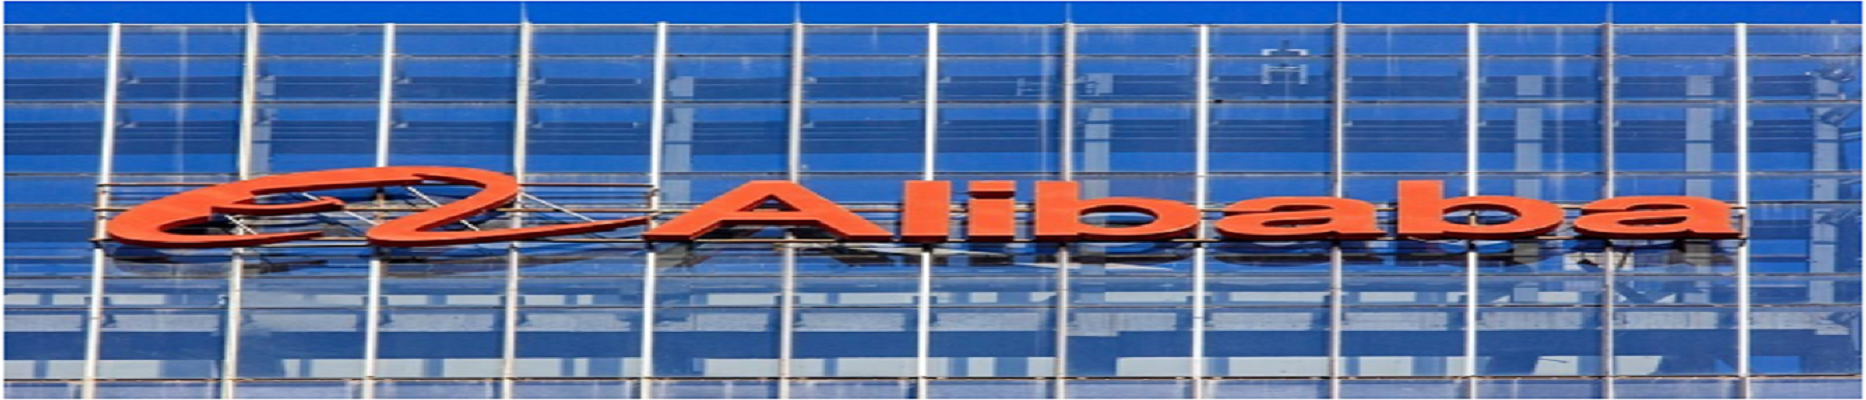 Large orange Alibaba logo on a building